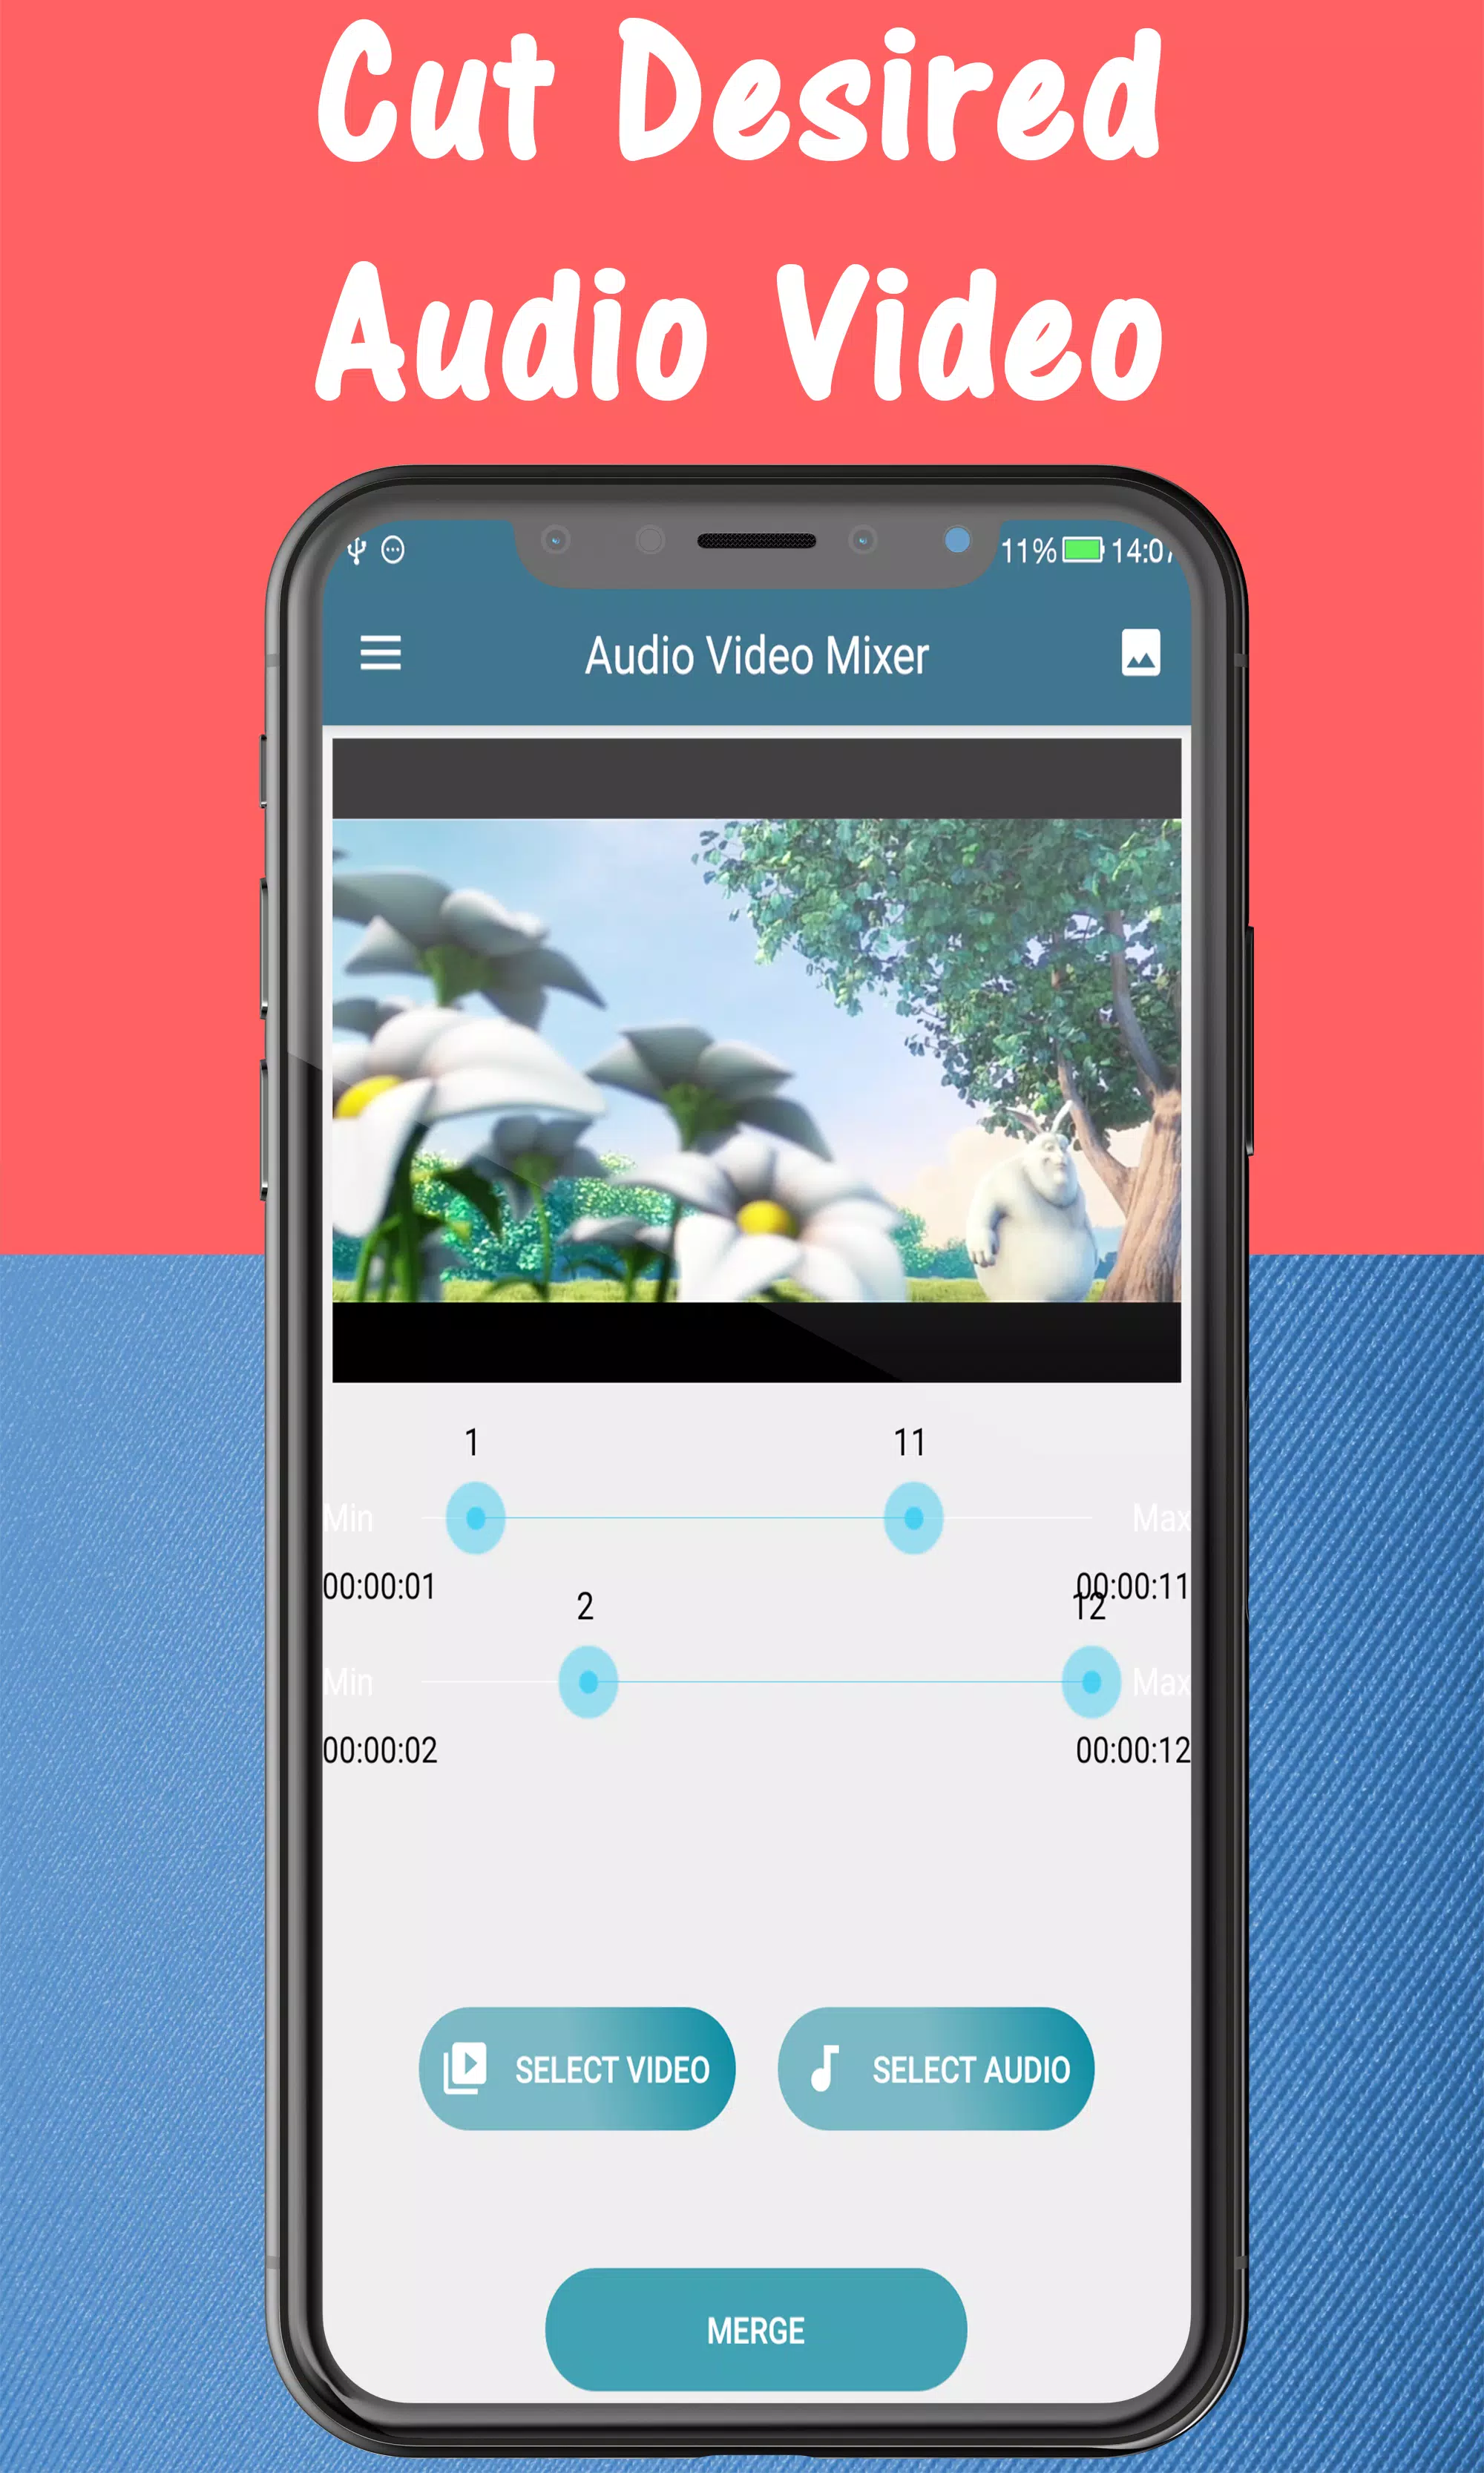 Đừng để việc thay đổi nhạc nền trở thành một gánh nặng với ứng dụng APK trên Android. Với nhiều tính năng đặc sắc và dễ sử dụng, bạn có thể thay đổi nhạc nền của video mà không cần mất quá nhiều thời gian và công sức.